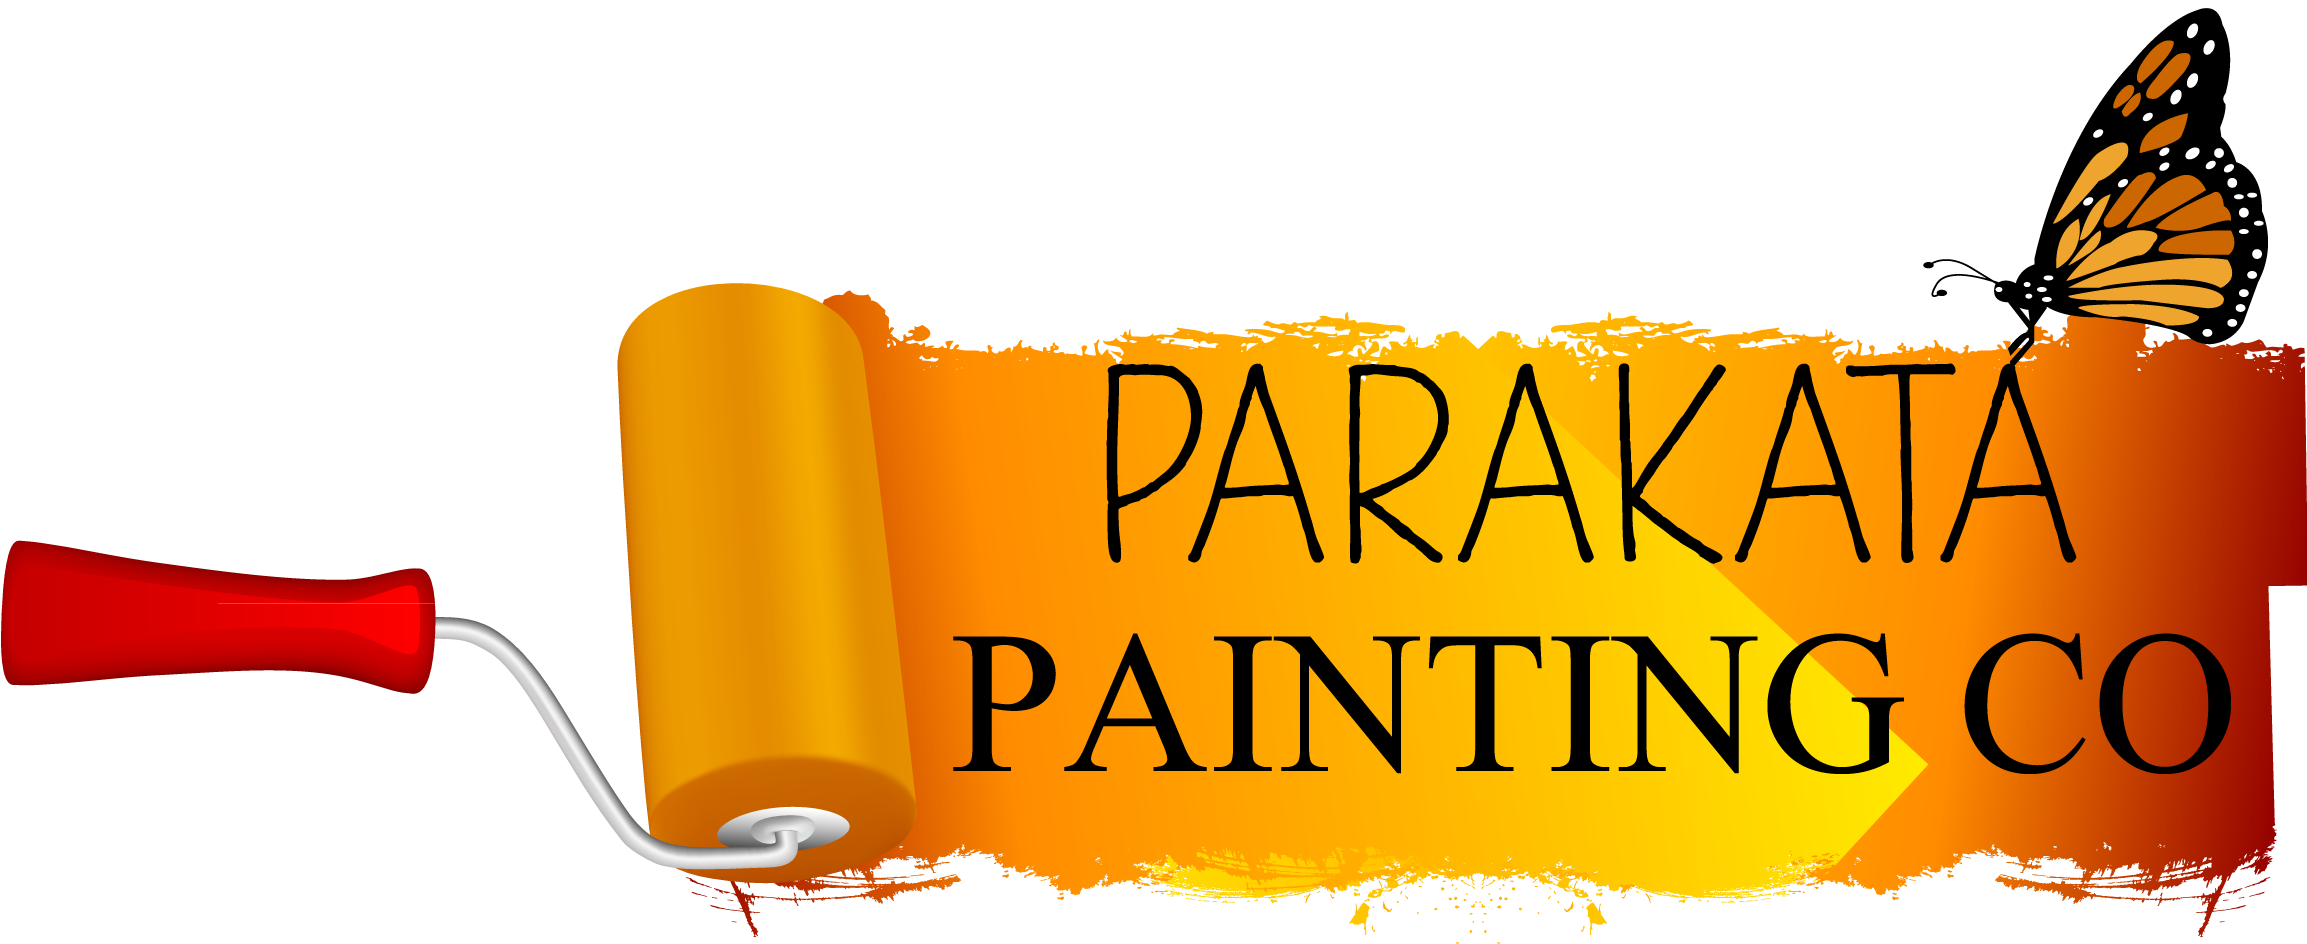 Parakata Painting